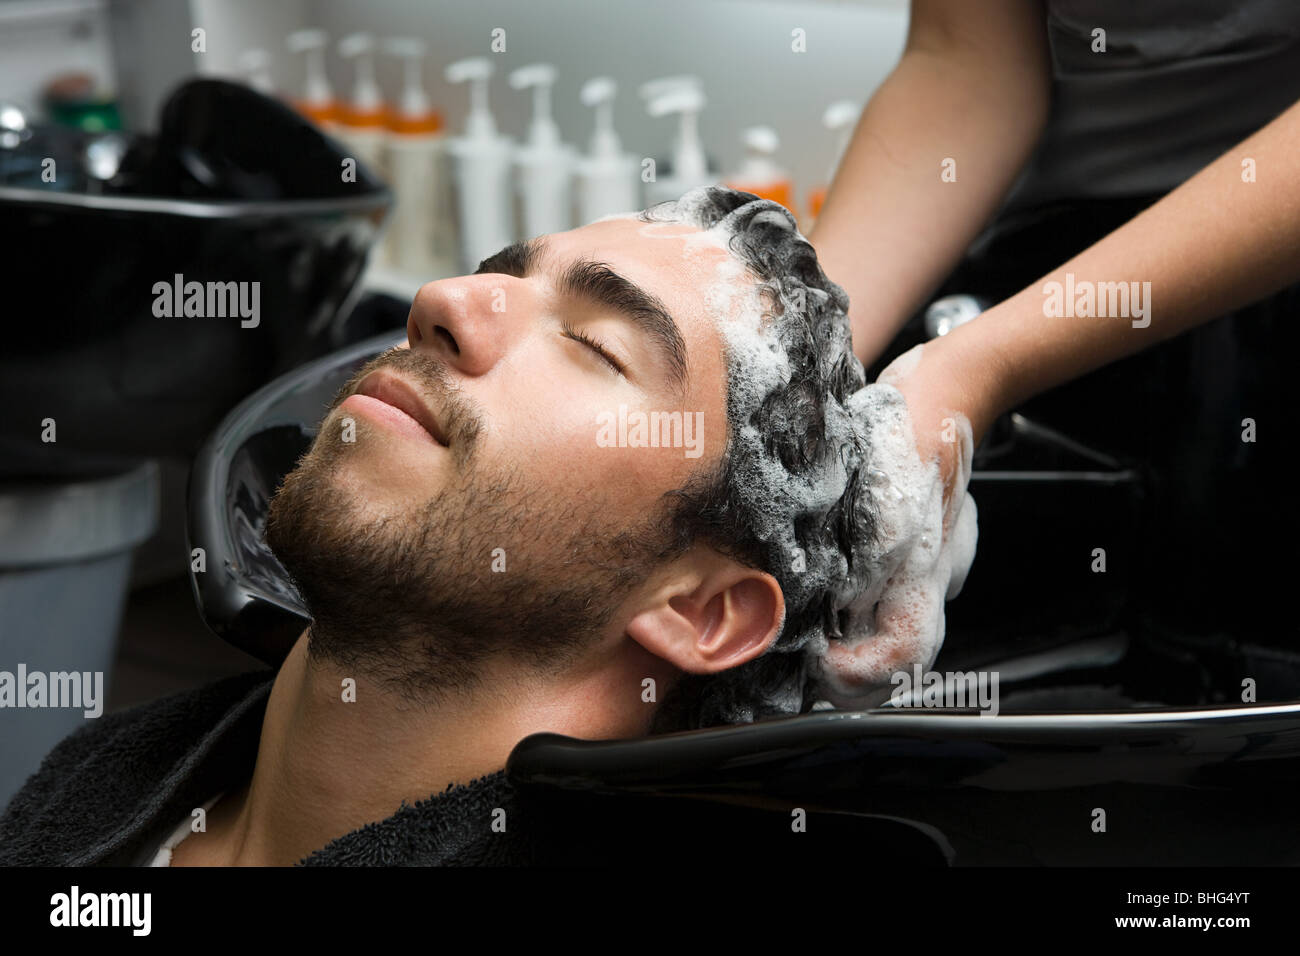 L'homme ayant ses cheveux shampooed Banque D'Images